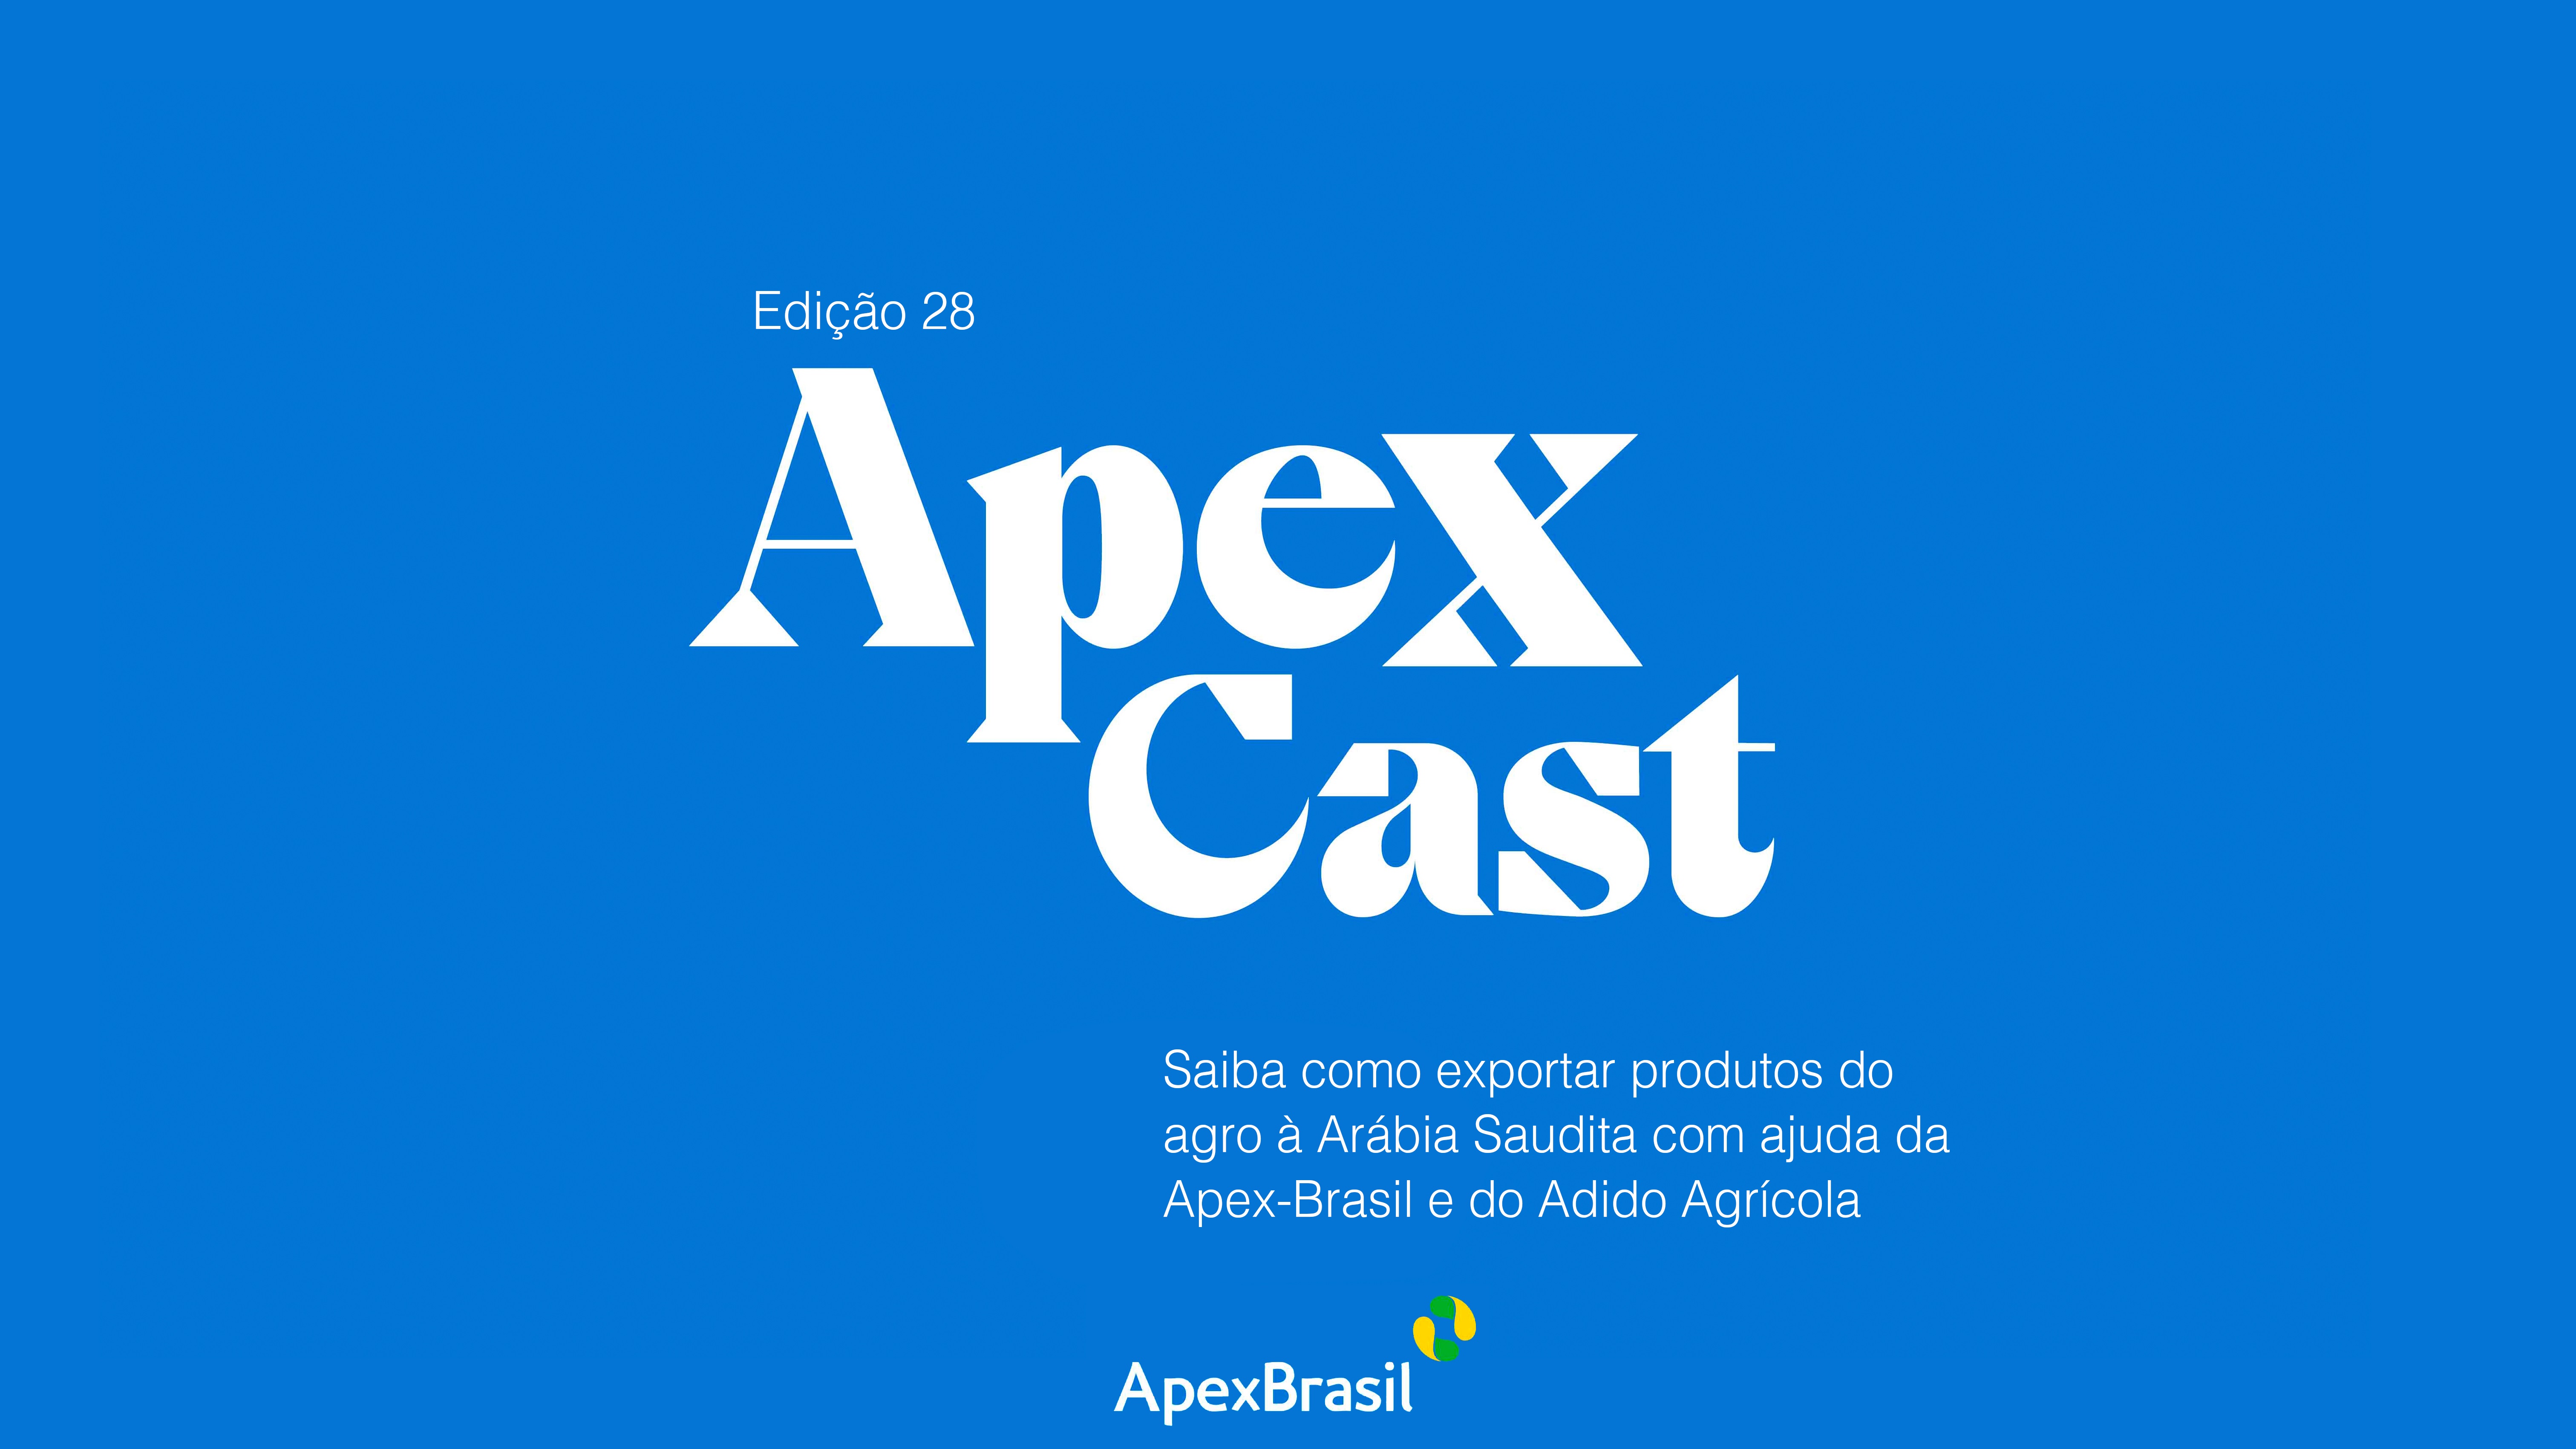 ApexCast mostra como o trabalho conjunto entre Apex-Brasil e Adido Agrícola do Brasil na Arábia Saudita pode impulsionar as exportações brasileiras do agro ao país